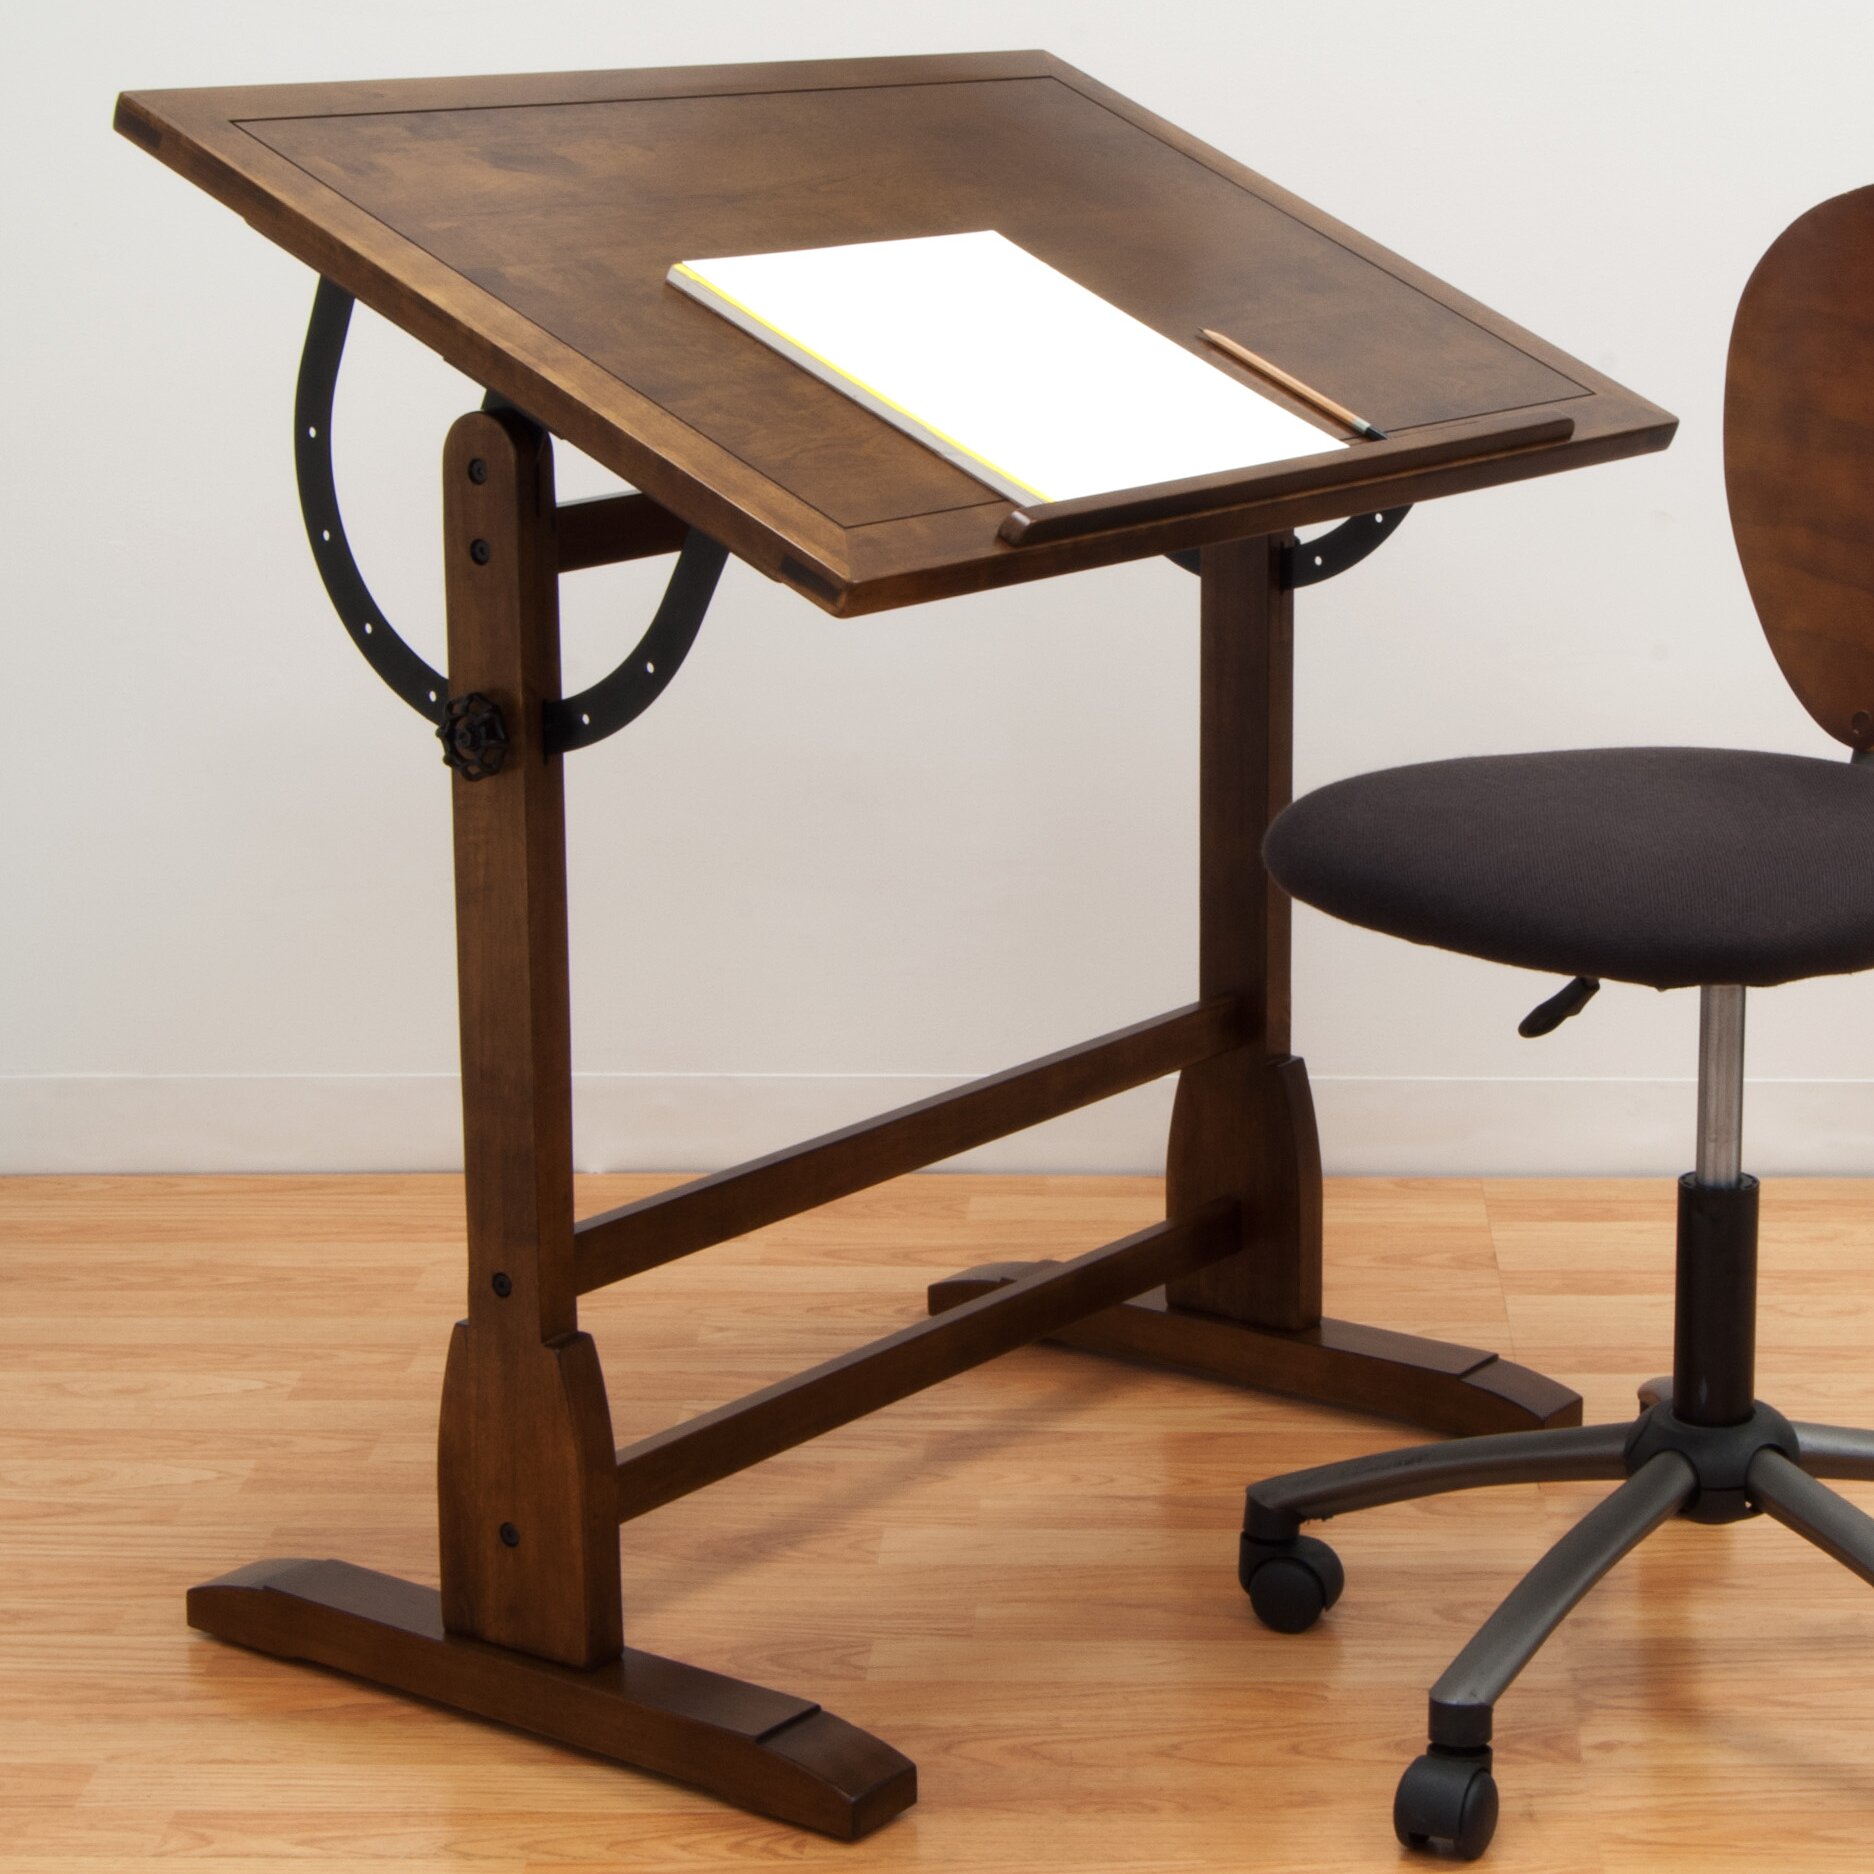 Studio Designs Vintage Wood Drafting Table & Reviews Wayfair